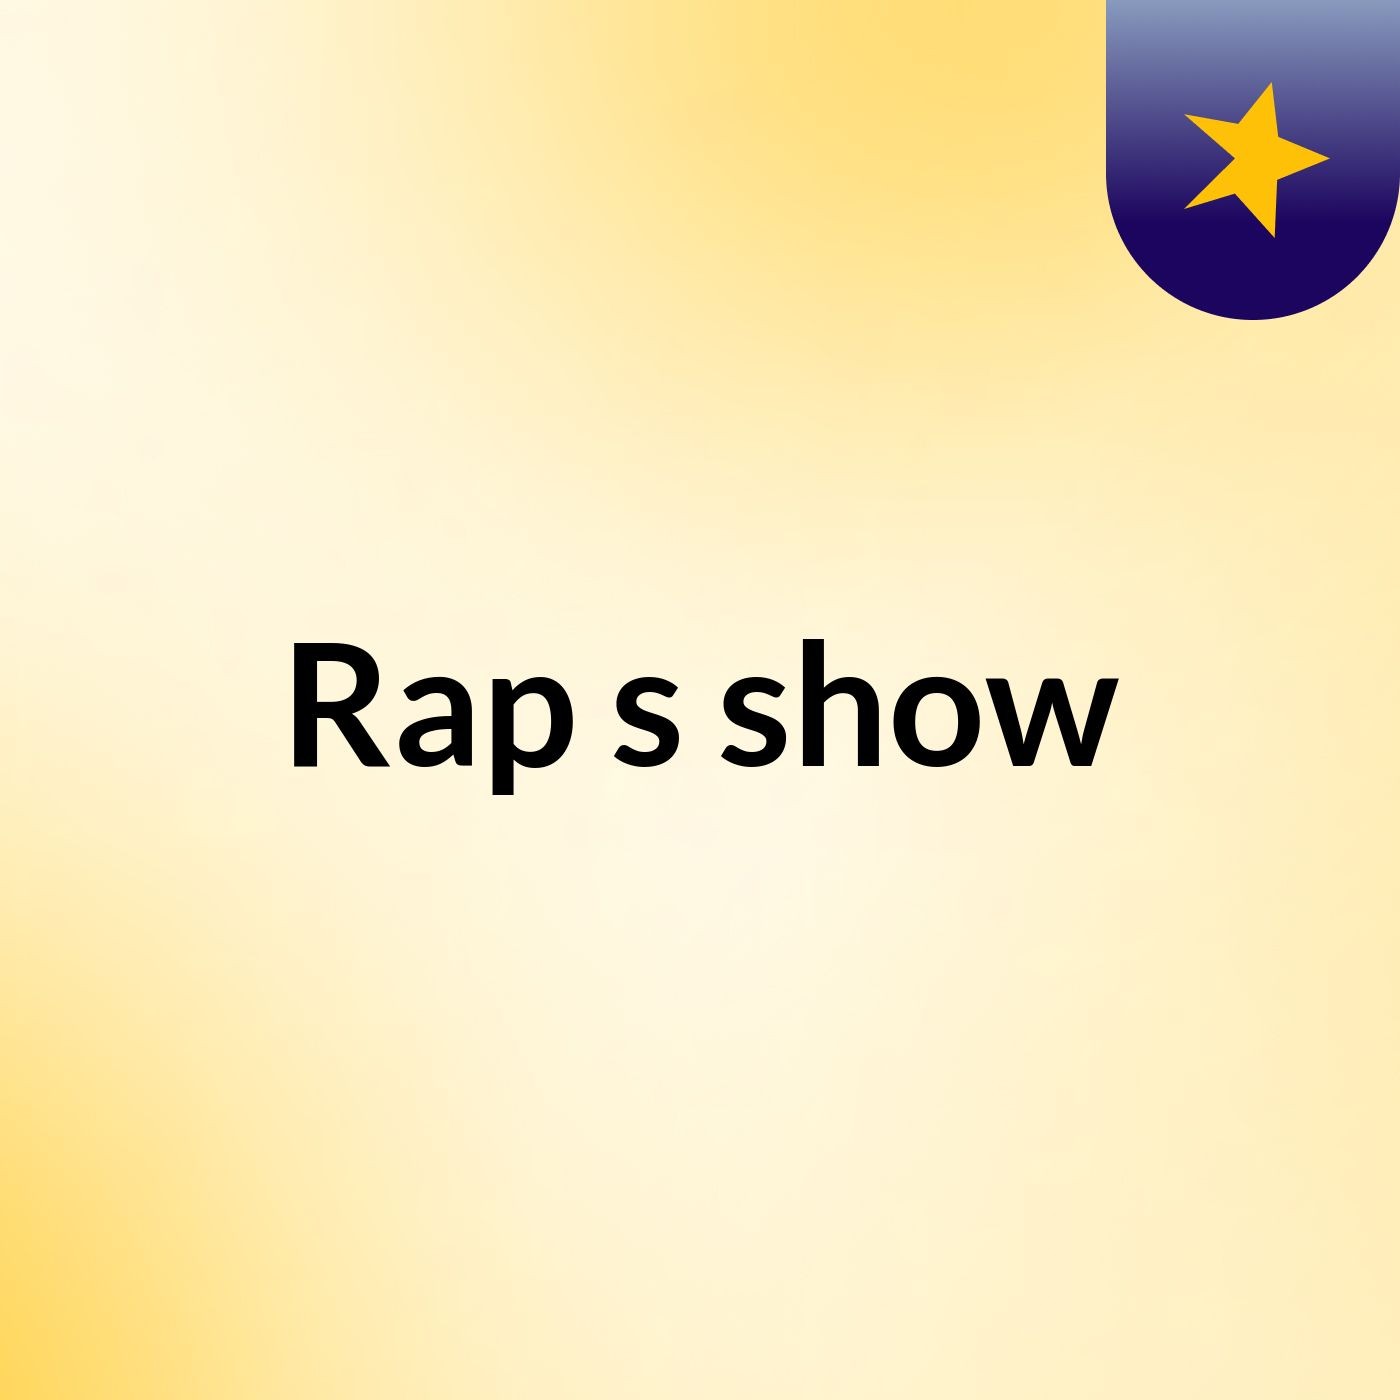 Rap's show